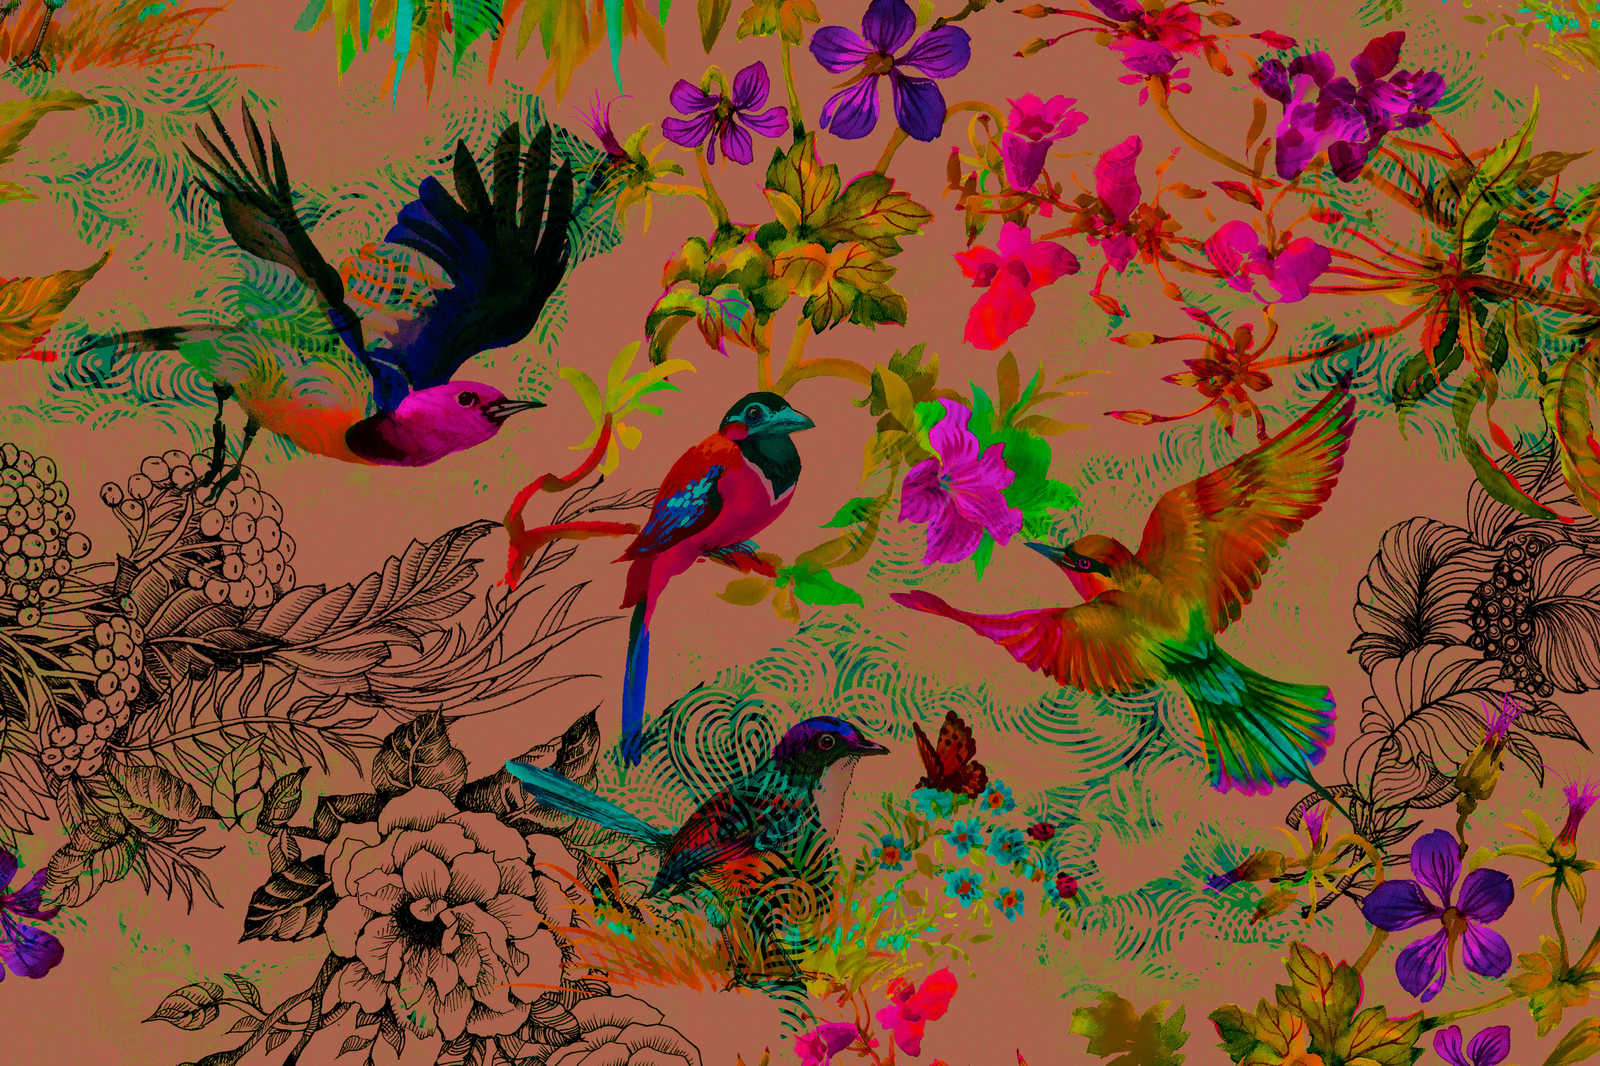             Uccello dipinto su tela in stile collage colorato - 0,90 m x 0,60 m
        